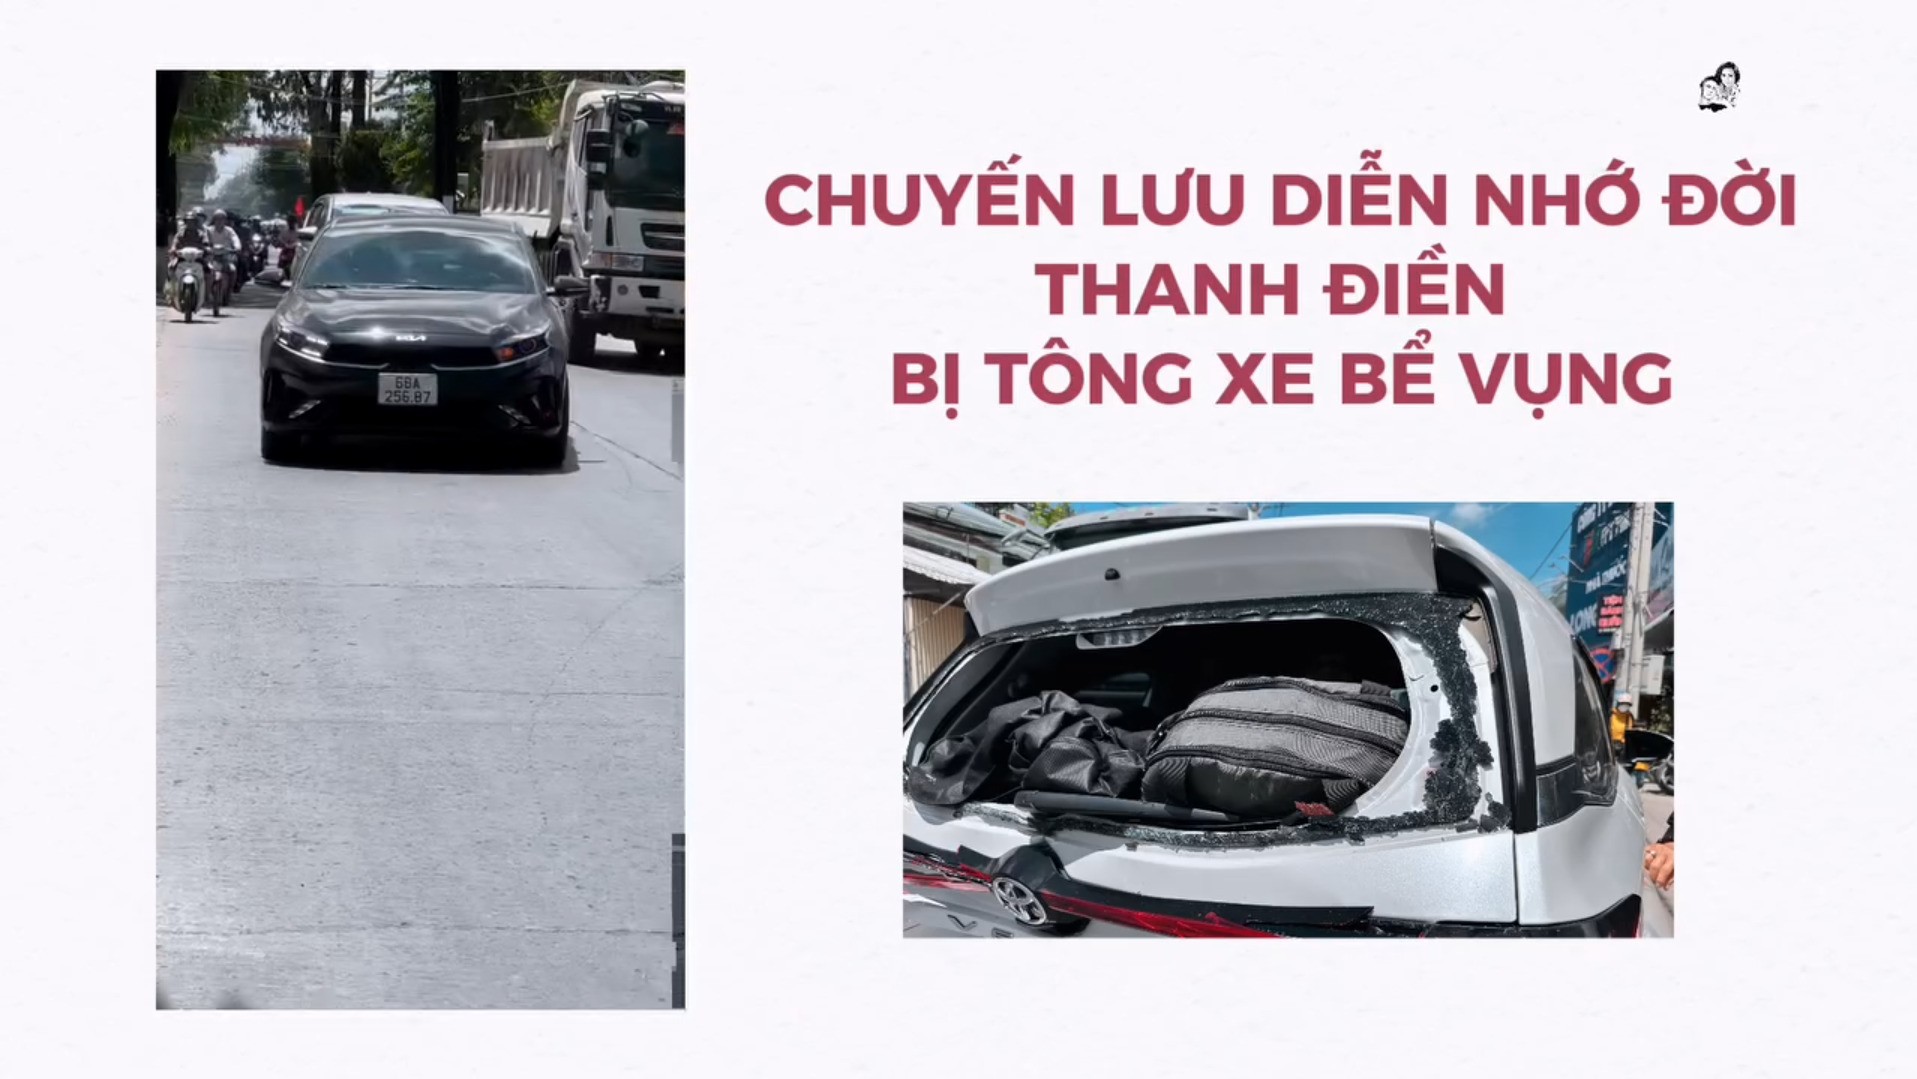 Cận cảnh chiếc xe gặp tai nạn&nbsp;của NSND Thanh Điền.